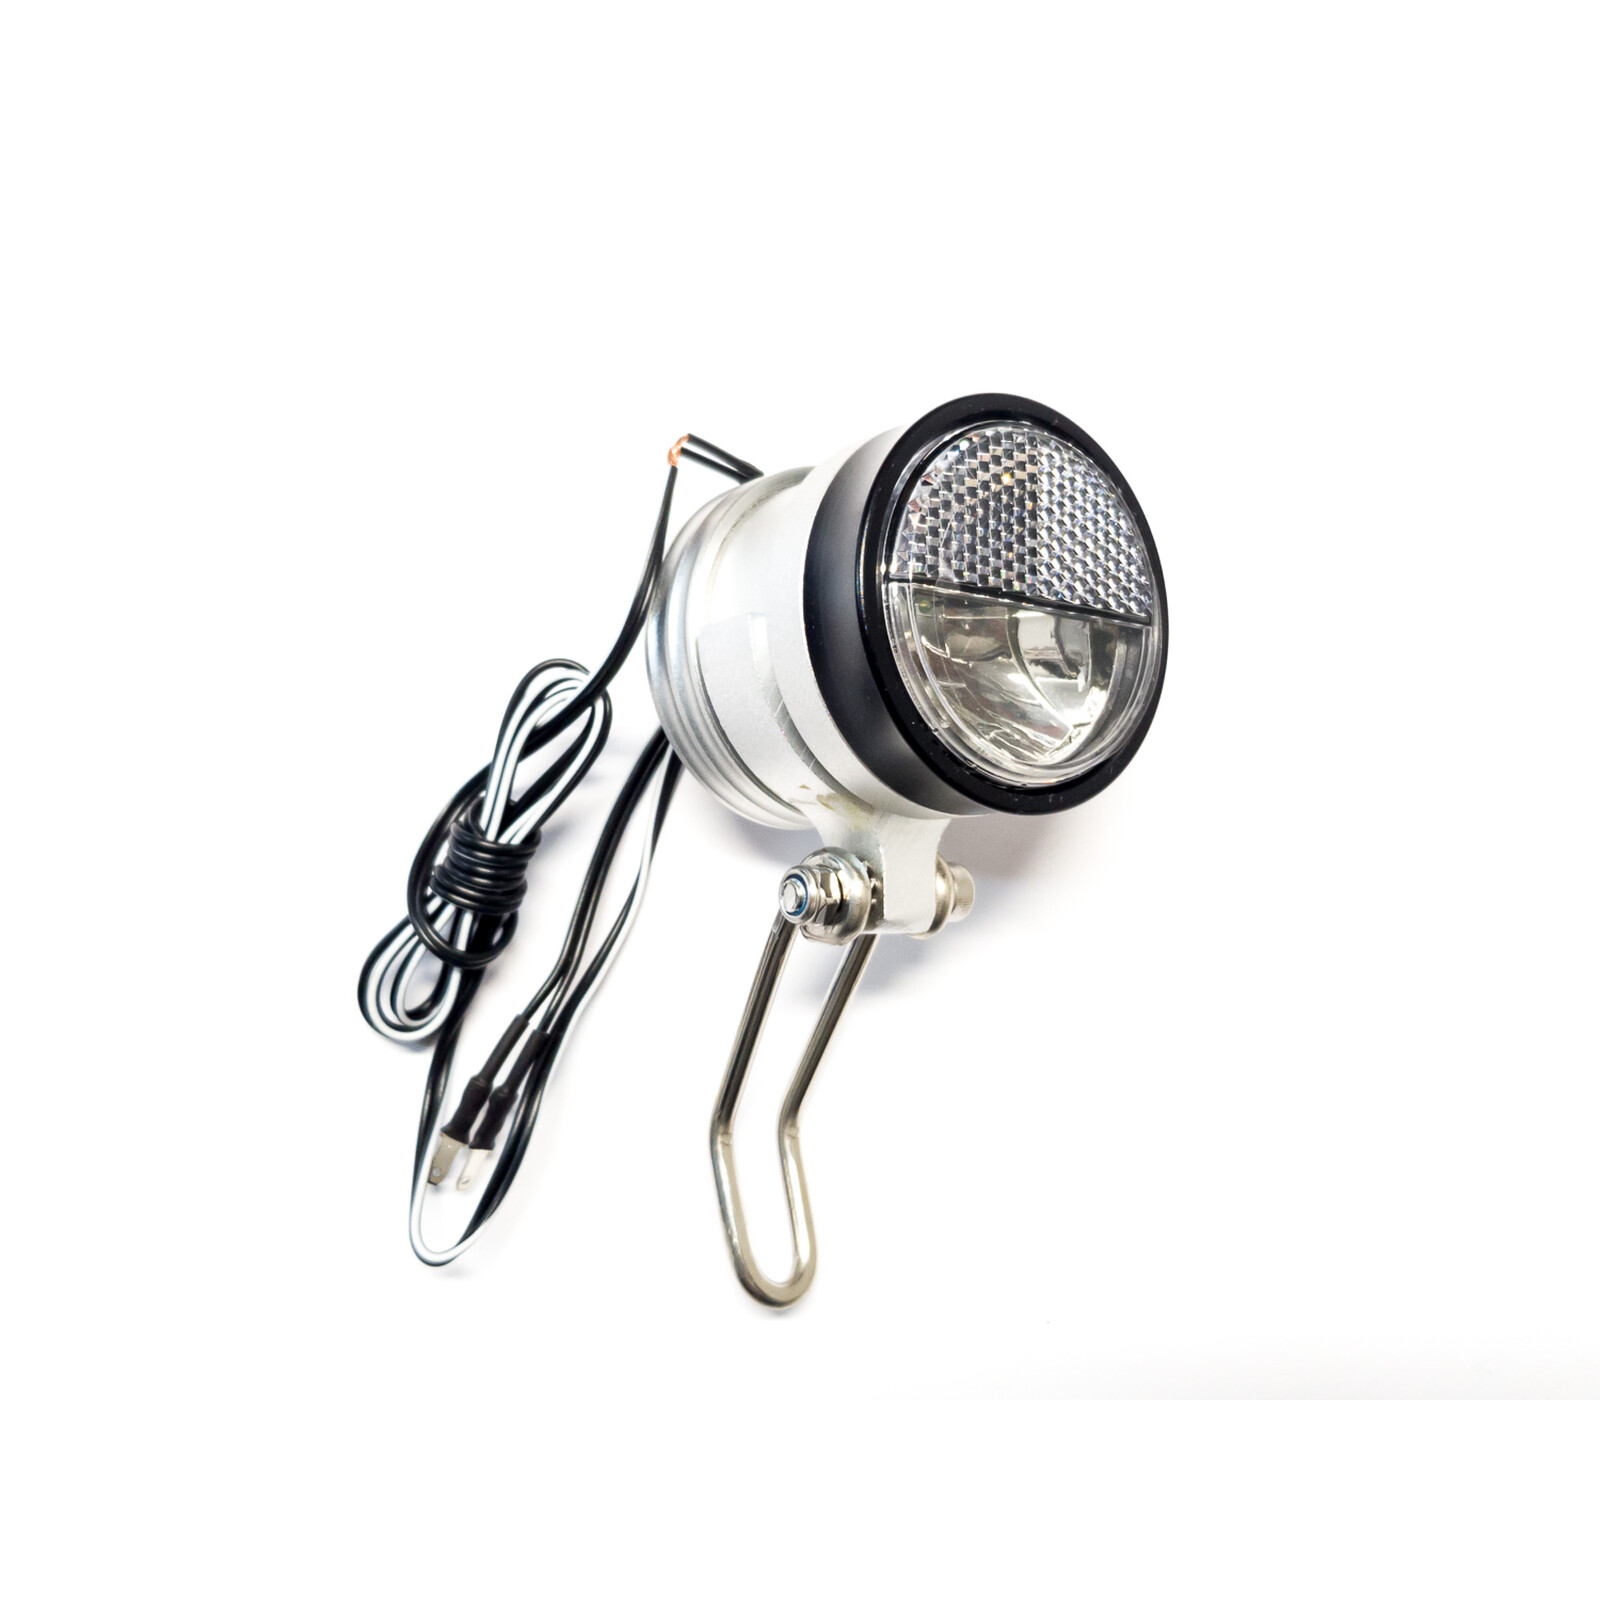 DUNLOP Fahrradlicht LED Retro Lampe Vorderlicht Fahrradlampe kabellos 